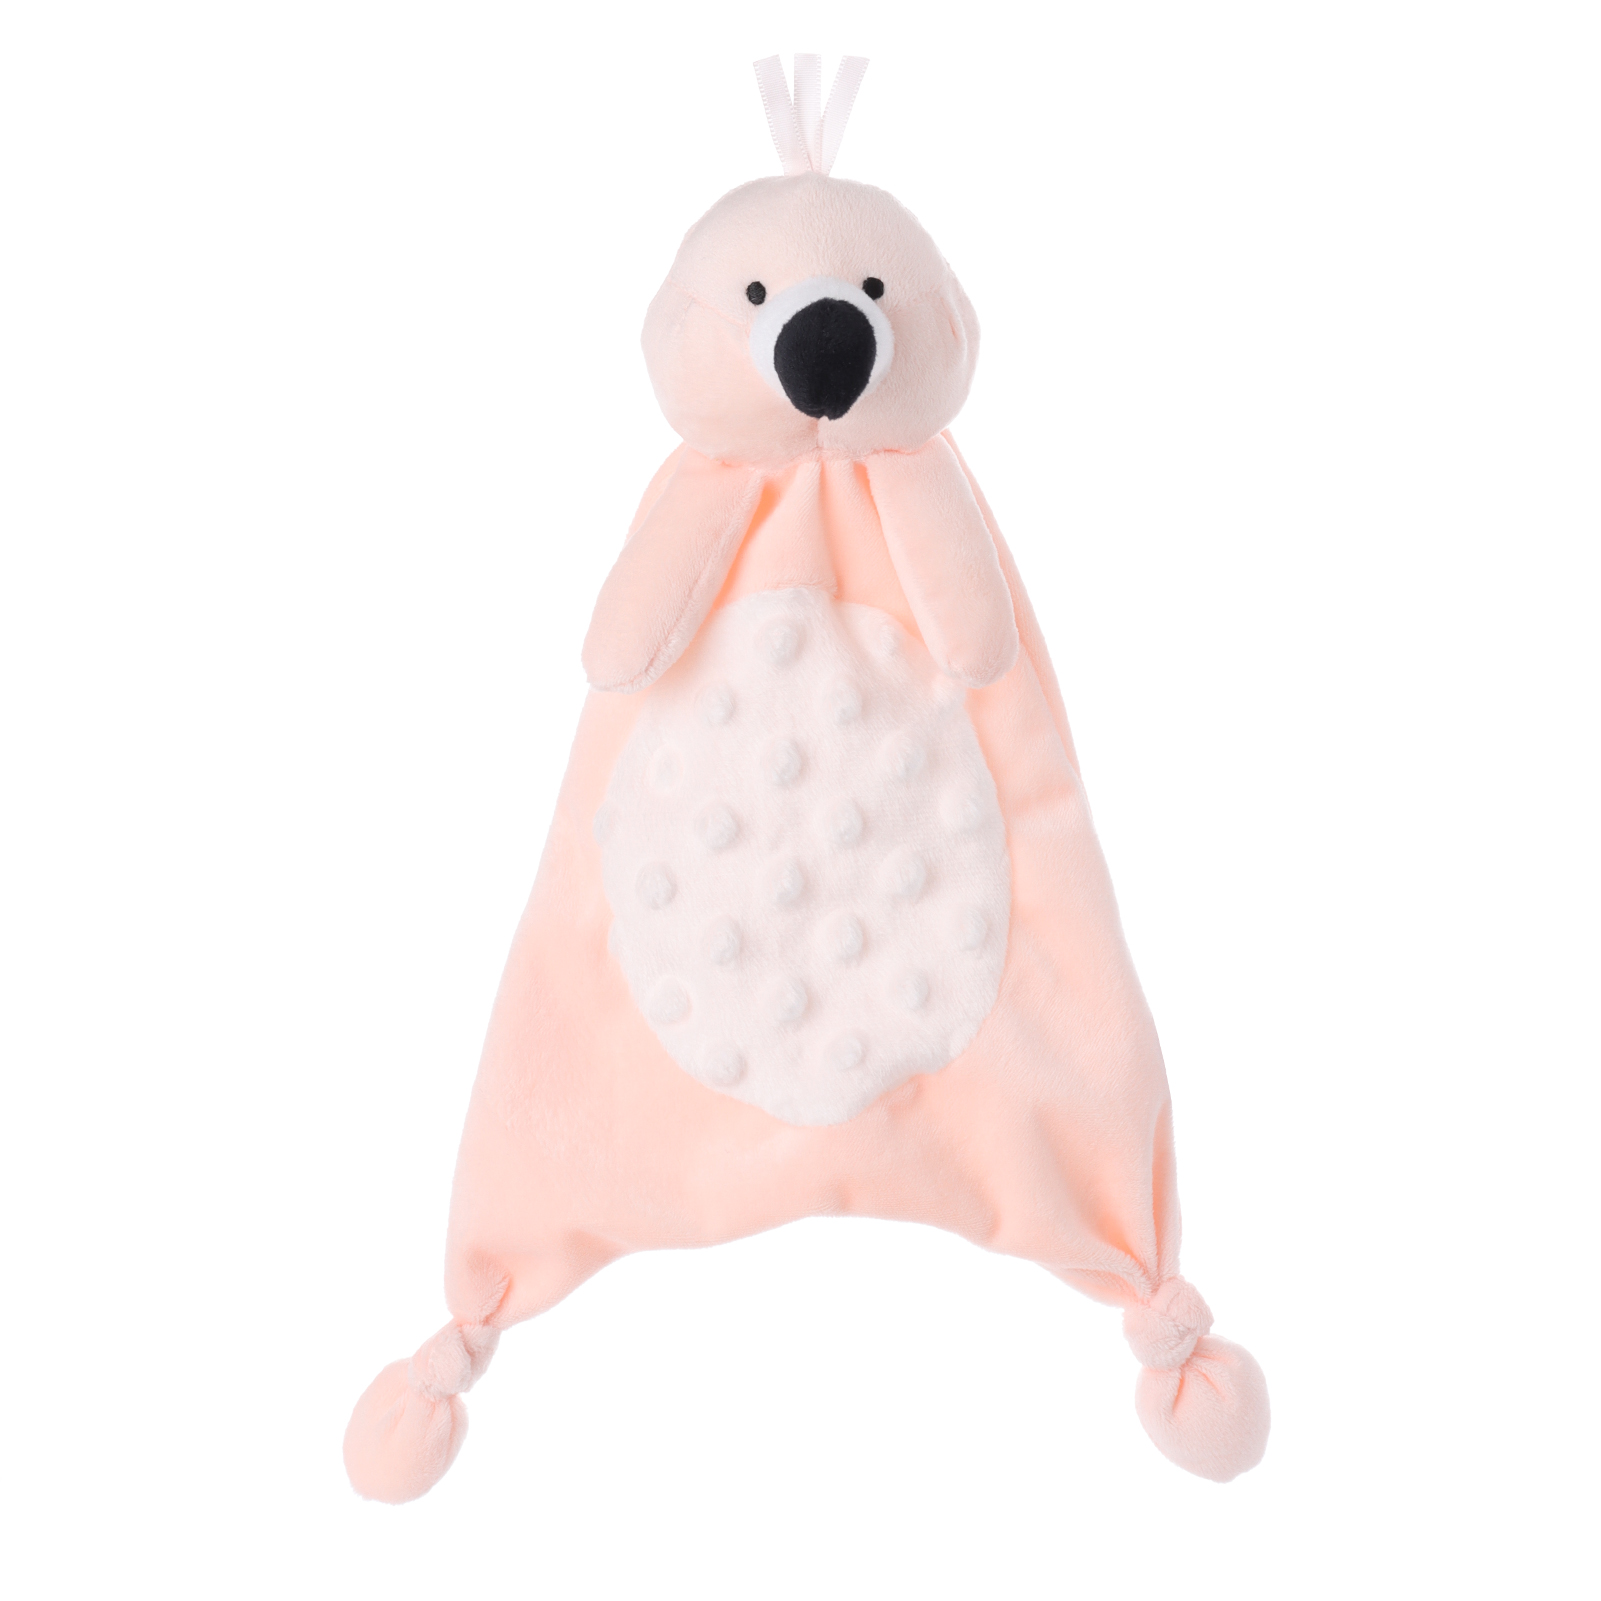 Apricot Lamb Plush Toy Bub-Flamingo Security Blanket Baby Lovey լցոնված կենդանու Ընտրված պատկեր